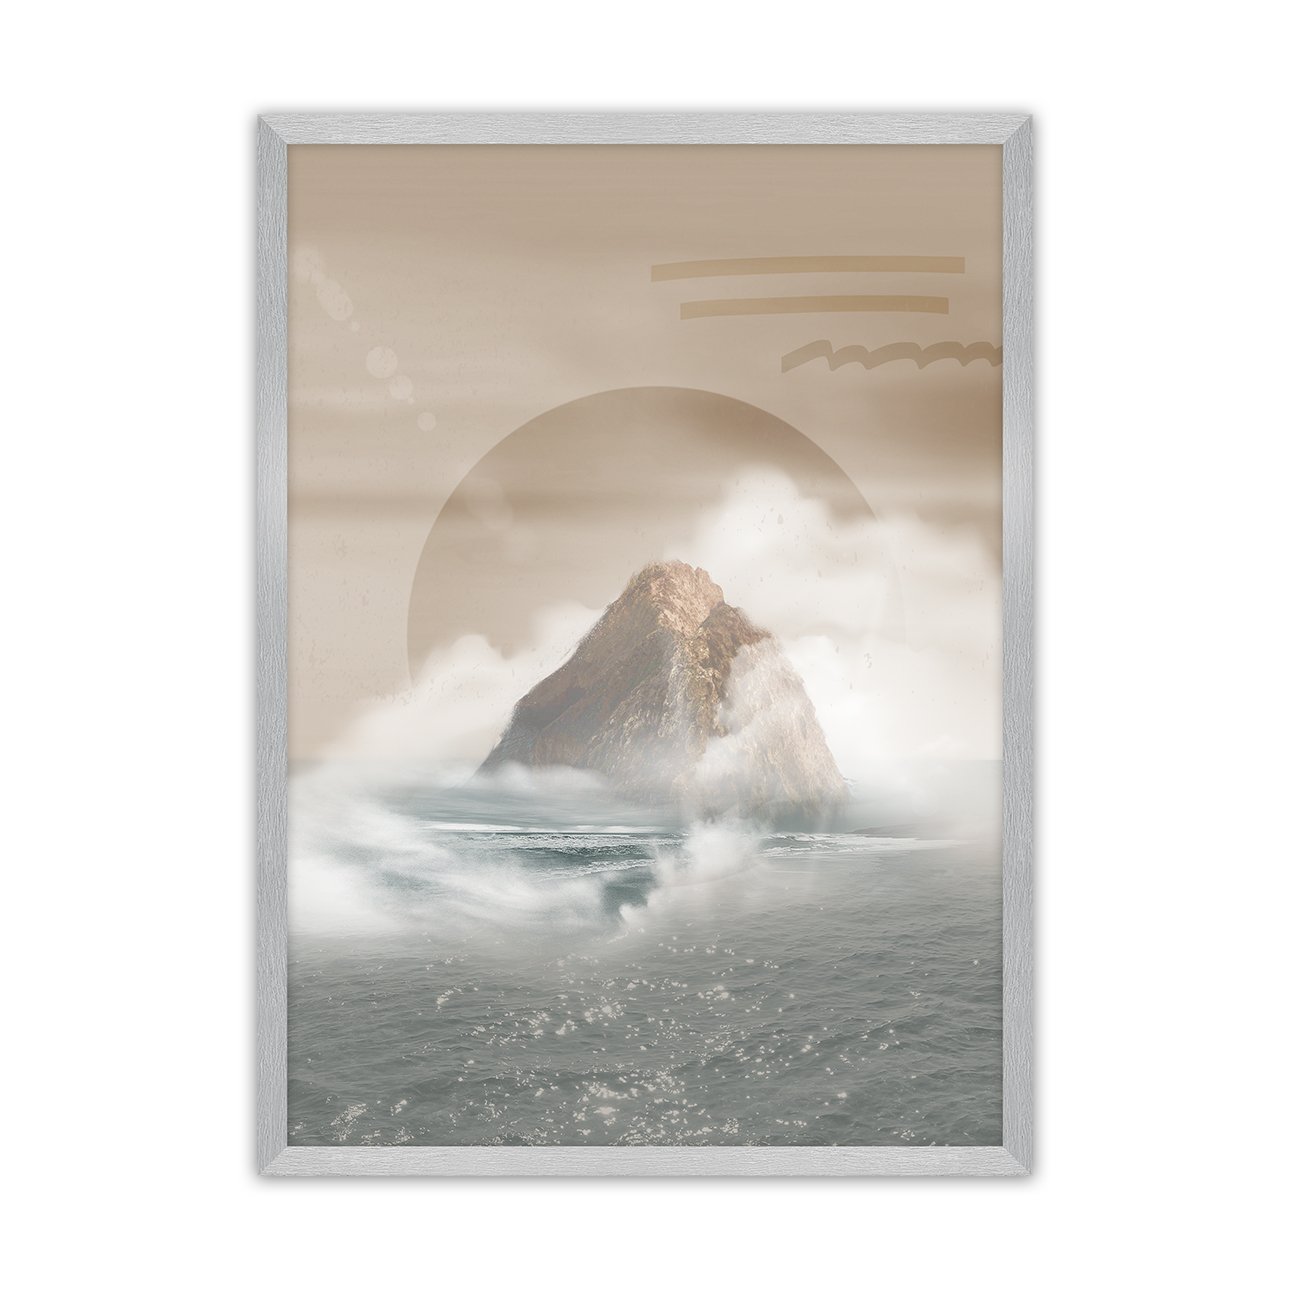 Dekoria Plakát Mountains, 70 x 100 cm, Volba rámku: Stříbrný